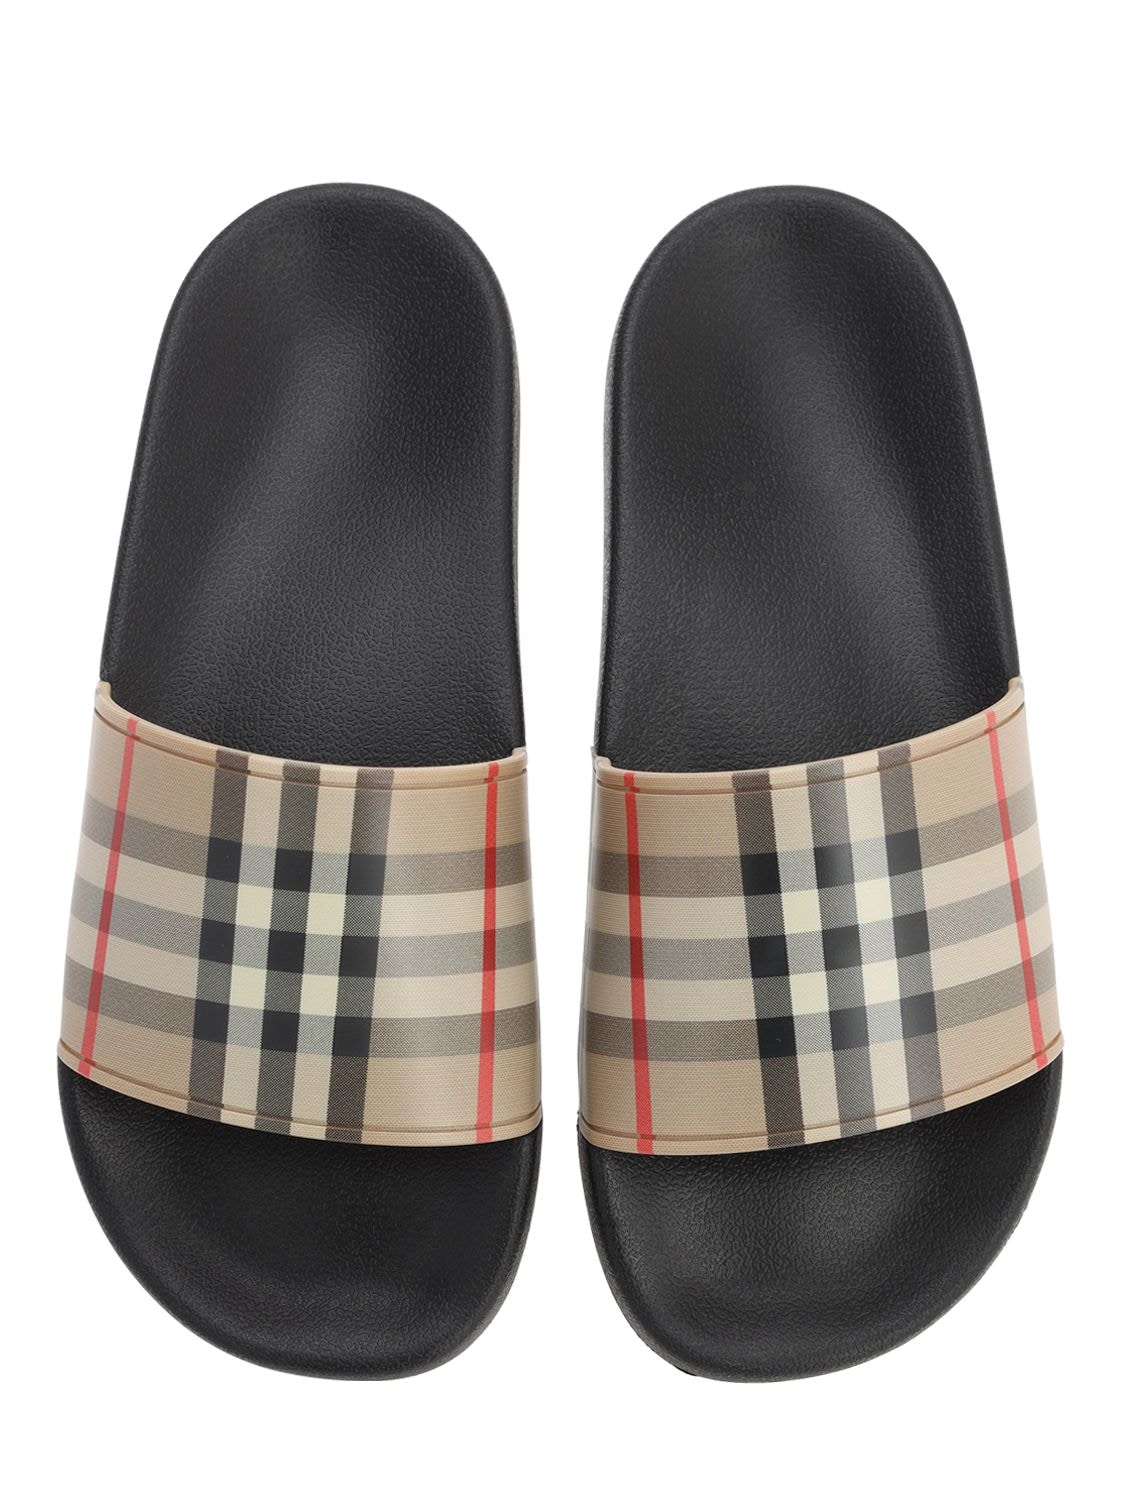 BURBERRY Furley Check Tech Slide Sandals | Smart Closet